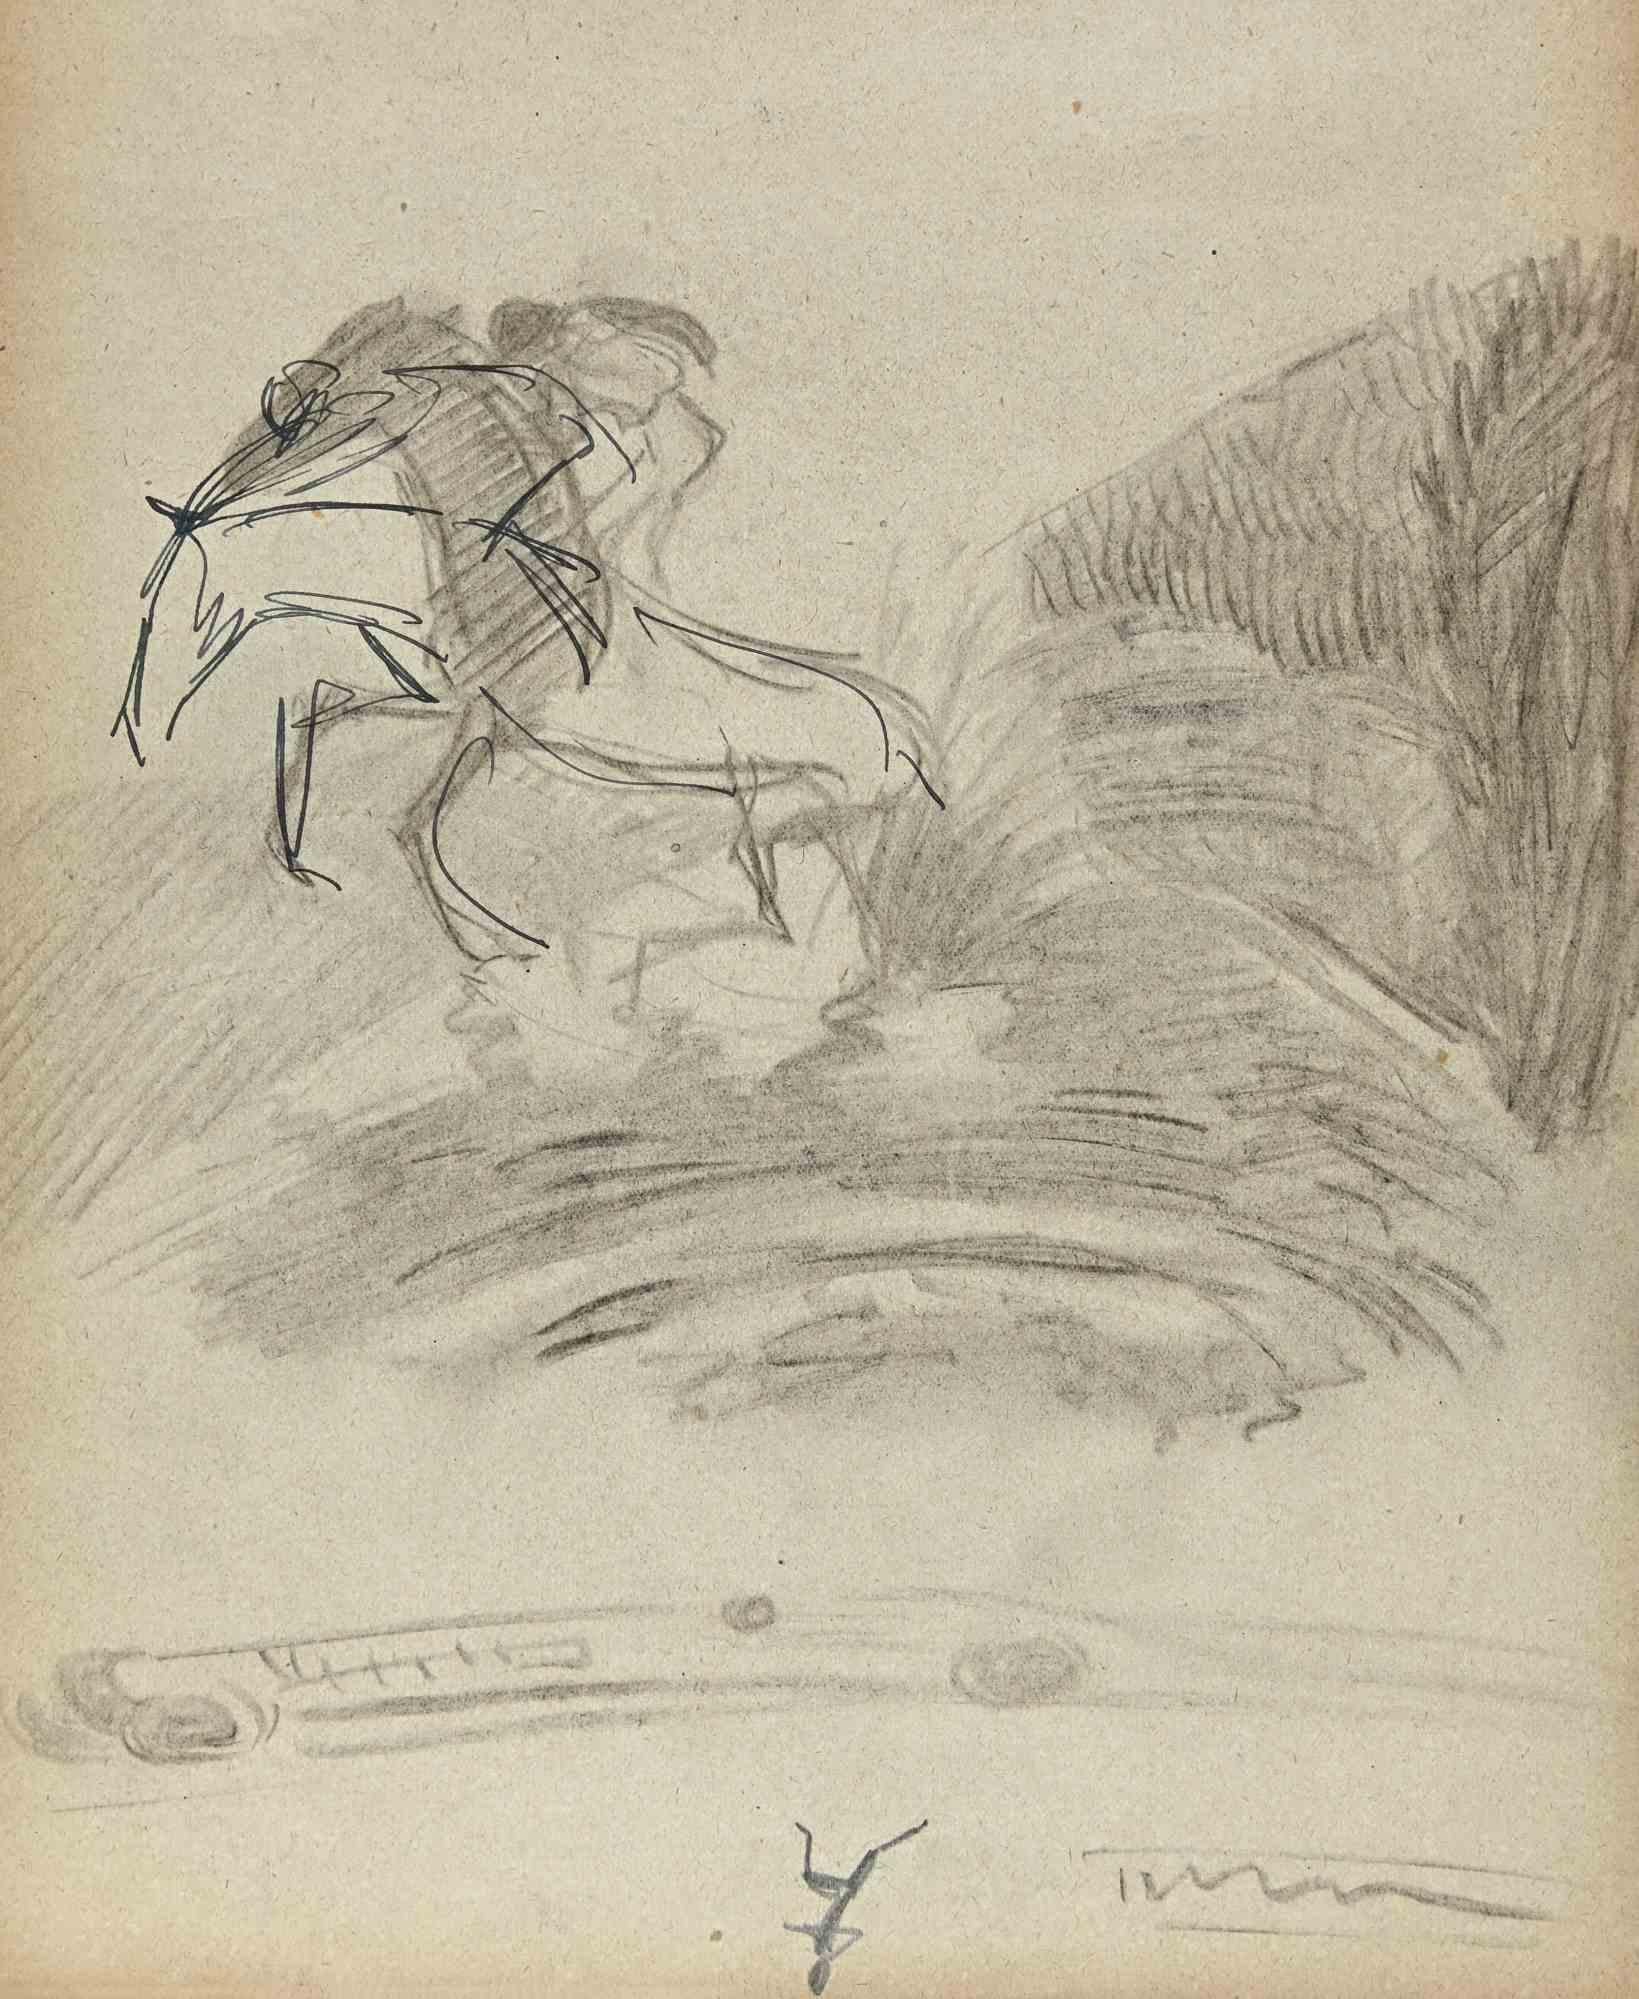 Der Reiter auf der Wiese ist eine Original-Zeichnung auf Papier des französischen Malers Norbert Meyre aus der Mitte des 20. Jahrhunderts.

Zeichnung mit Bleistift.

Gute Bedingungen.

Das Kunstwerk wird durch geschickte und schnelle Striche von